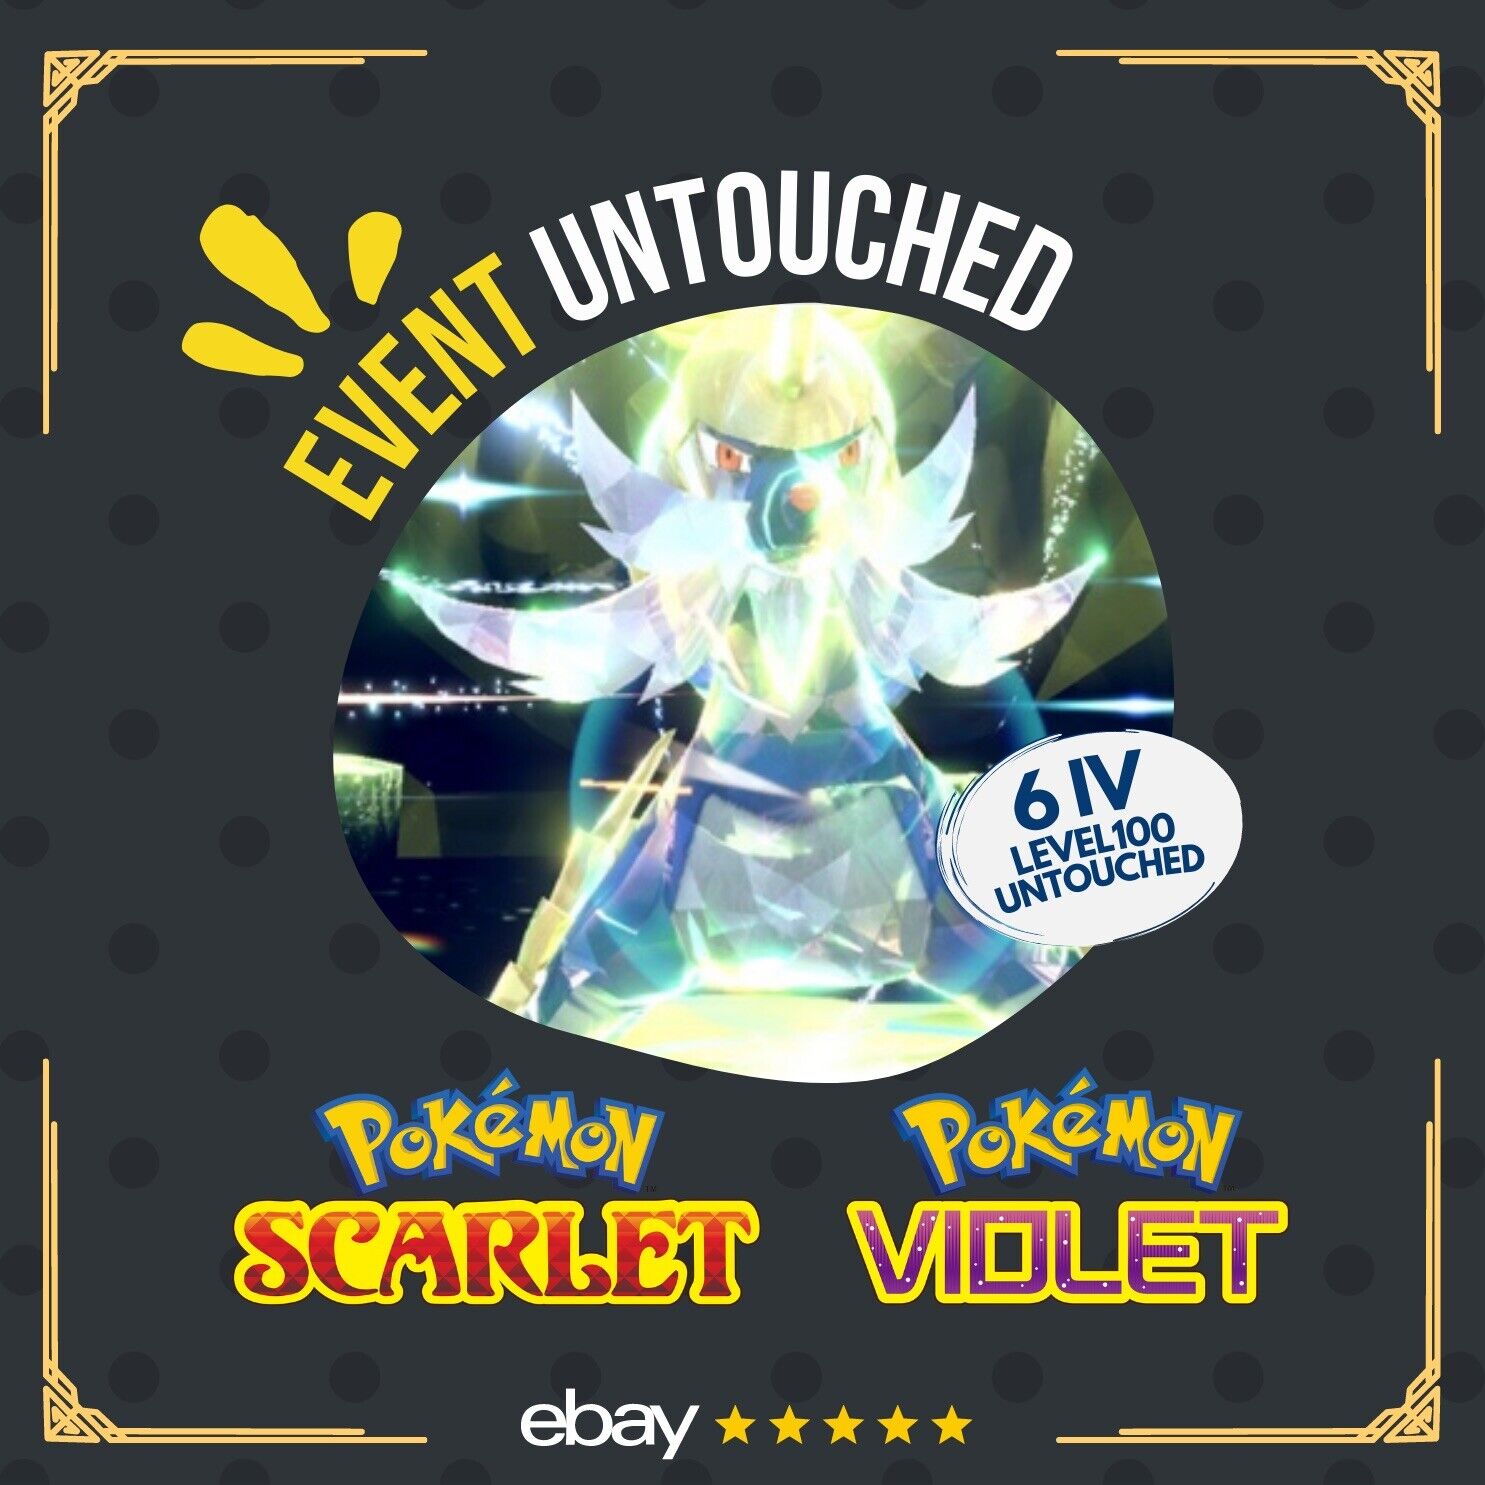 Samurott Unrivaled Tera Raid Bug Event Untouched Legit Pokémon Scarlet Violet Non shiny Lv. 100 by Shiny Living Dex | Shiny Living Dex